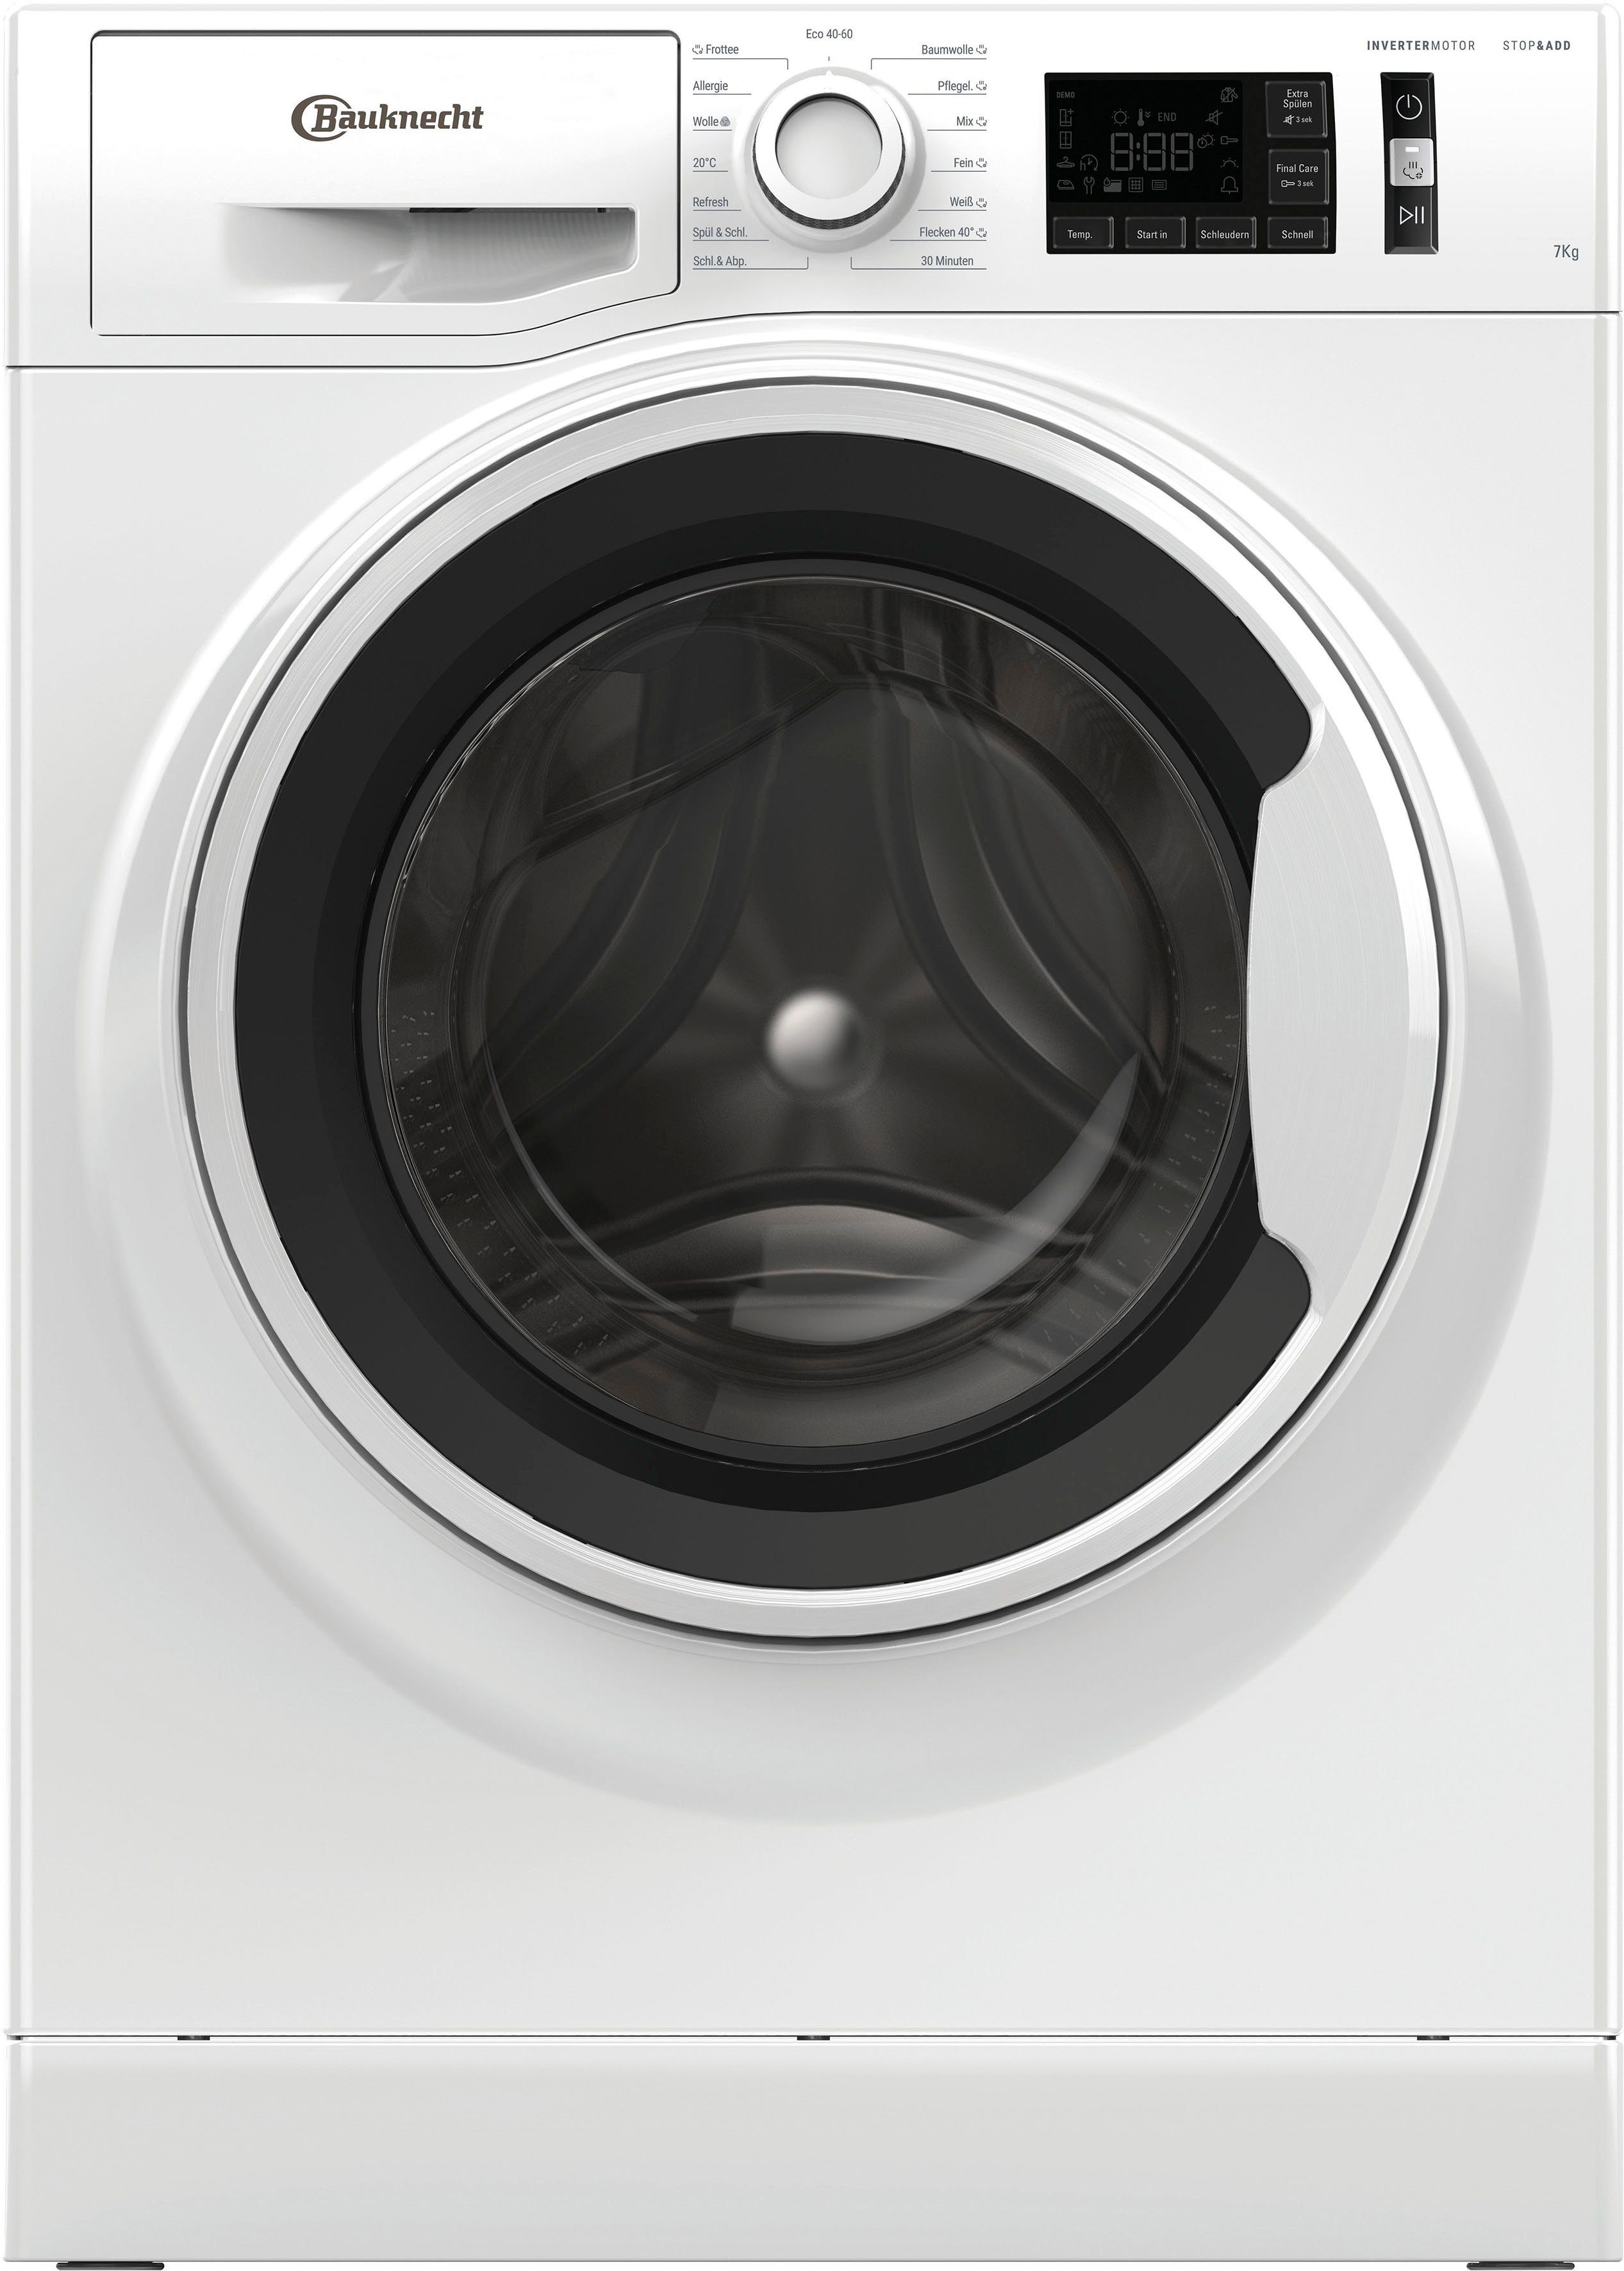 Neue Produkte sind günstig BAUKNECHT Waschmaschine W Active kg, B, 1400 711 U/min 7